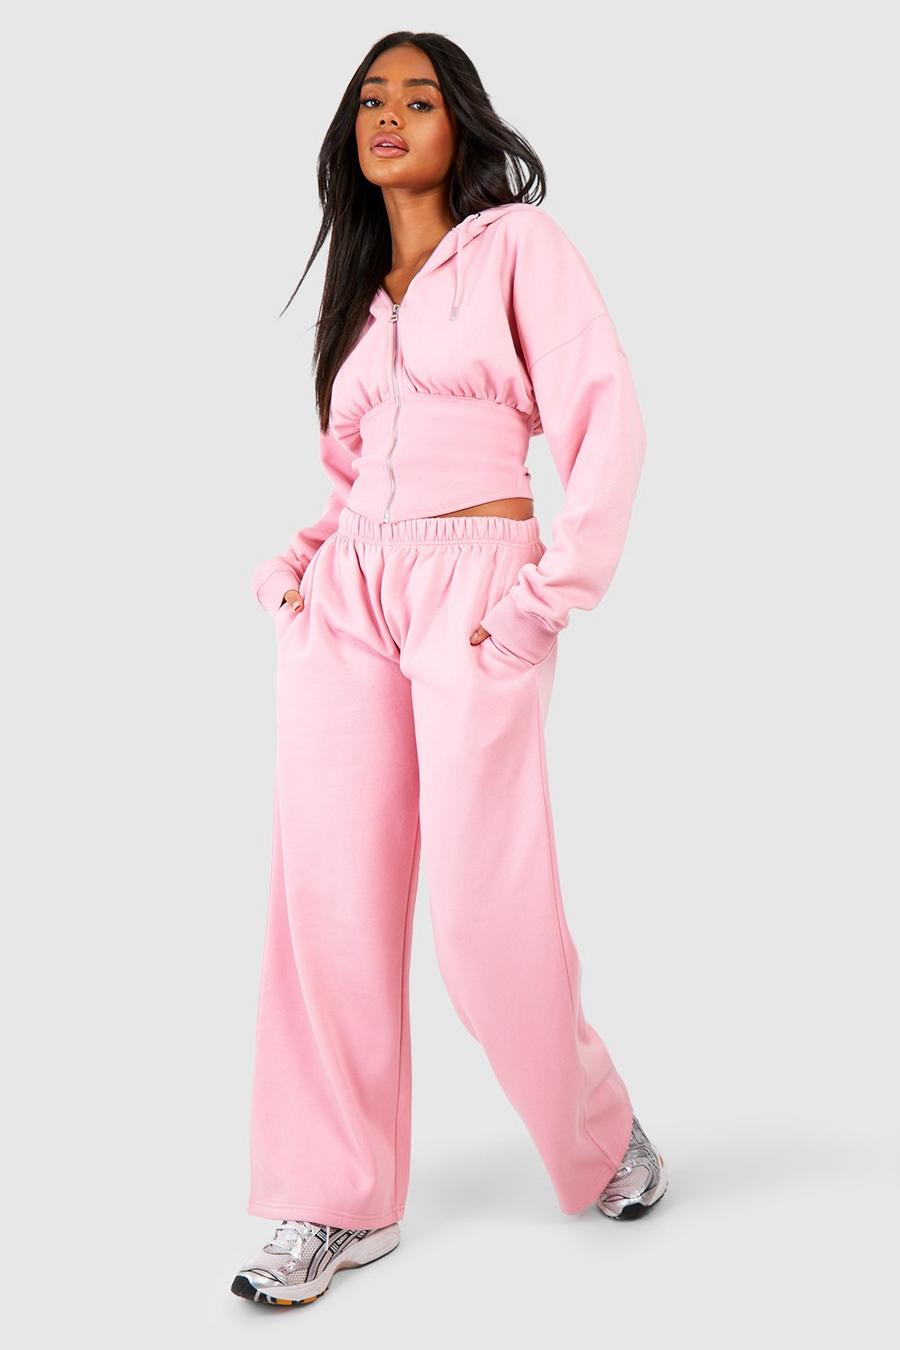 Tuta sportiva stile corsetto con cappuccio, zip & pantaloni tuta dritti, Pink image number 1